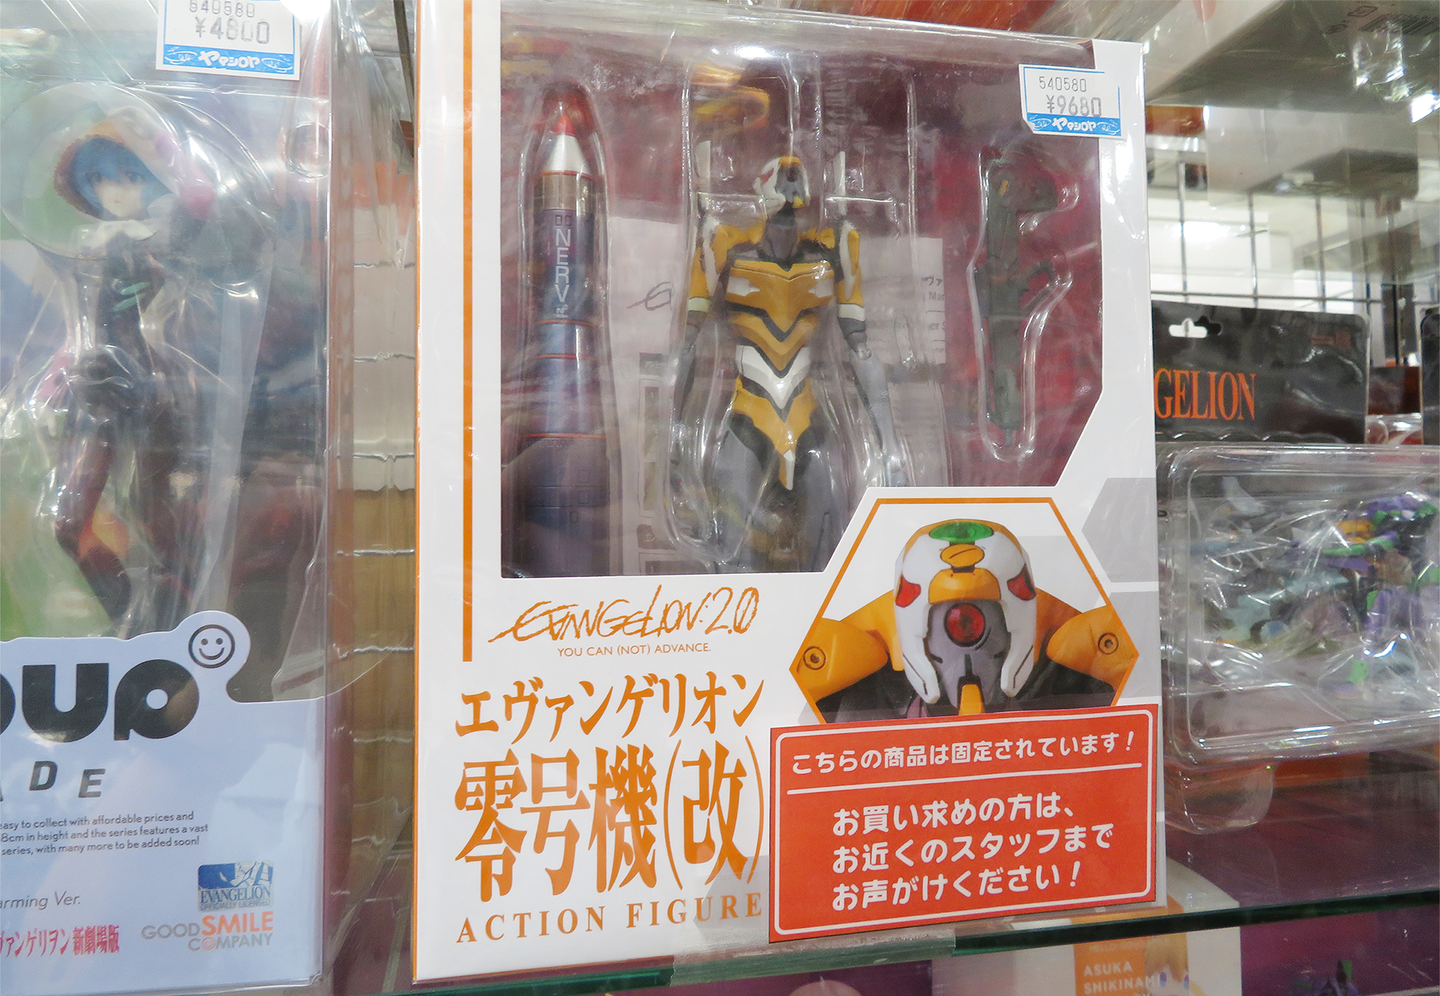 Images of Evangelion merchandise sold at YAMASHIROYA3